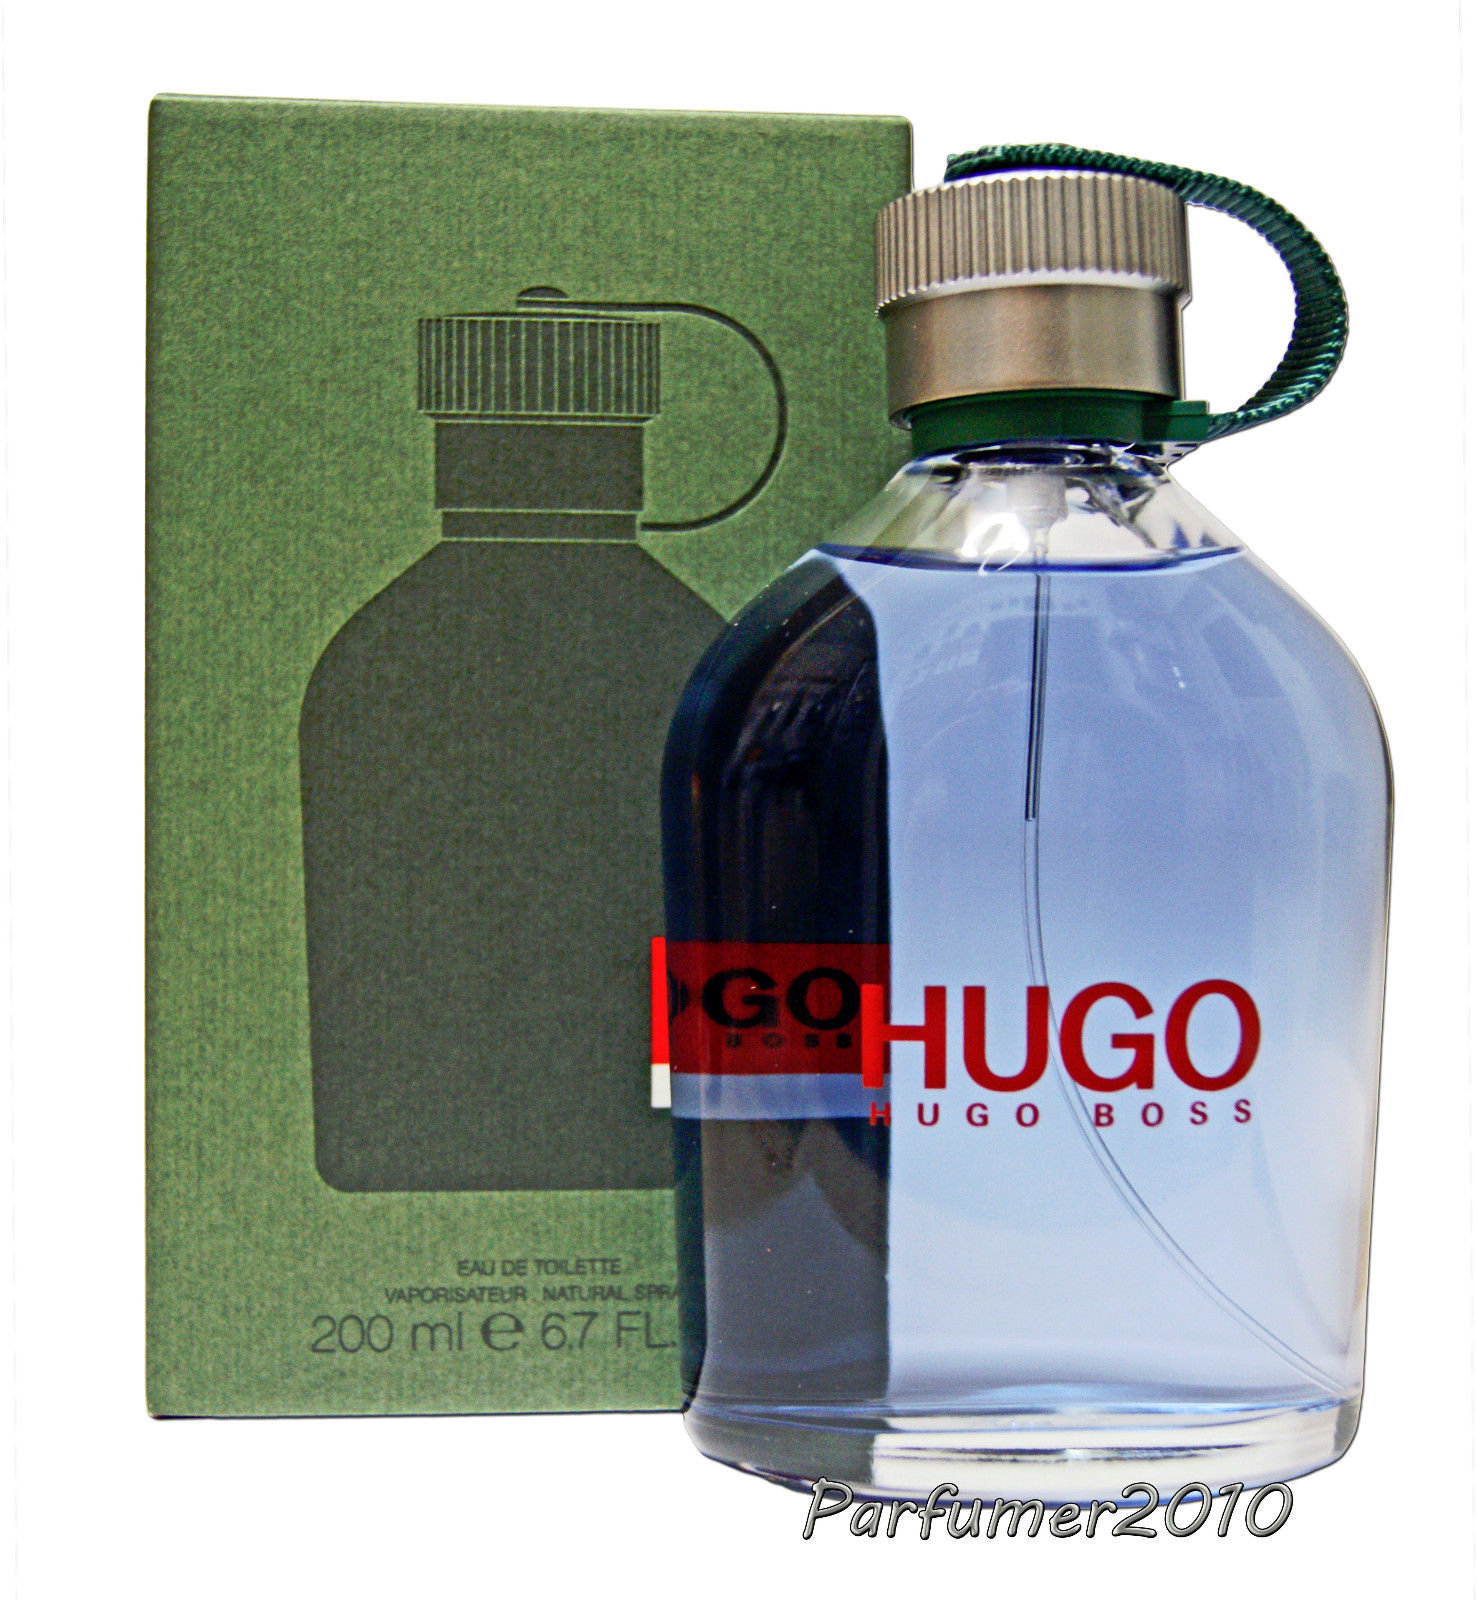 Hugo Boss Hugo Man 200ml EDT Eau de Toilette spray Neu&Originalverpackt